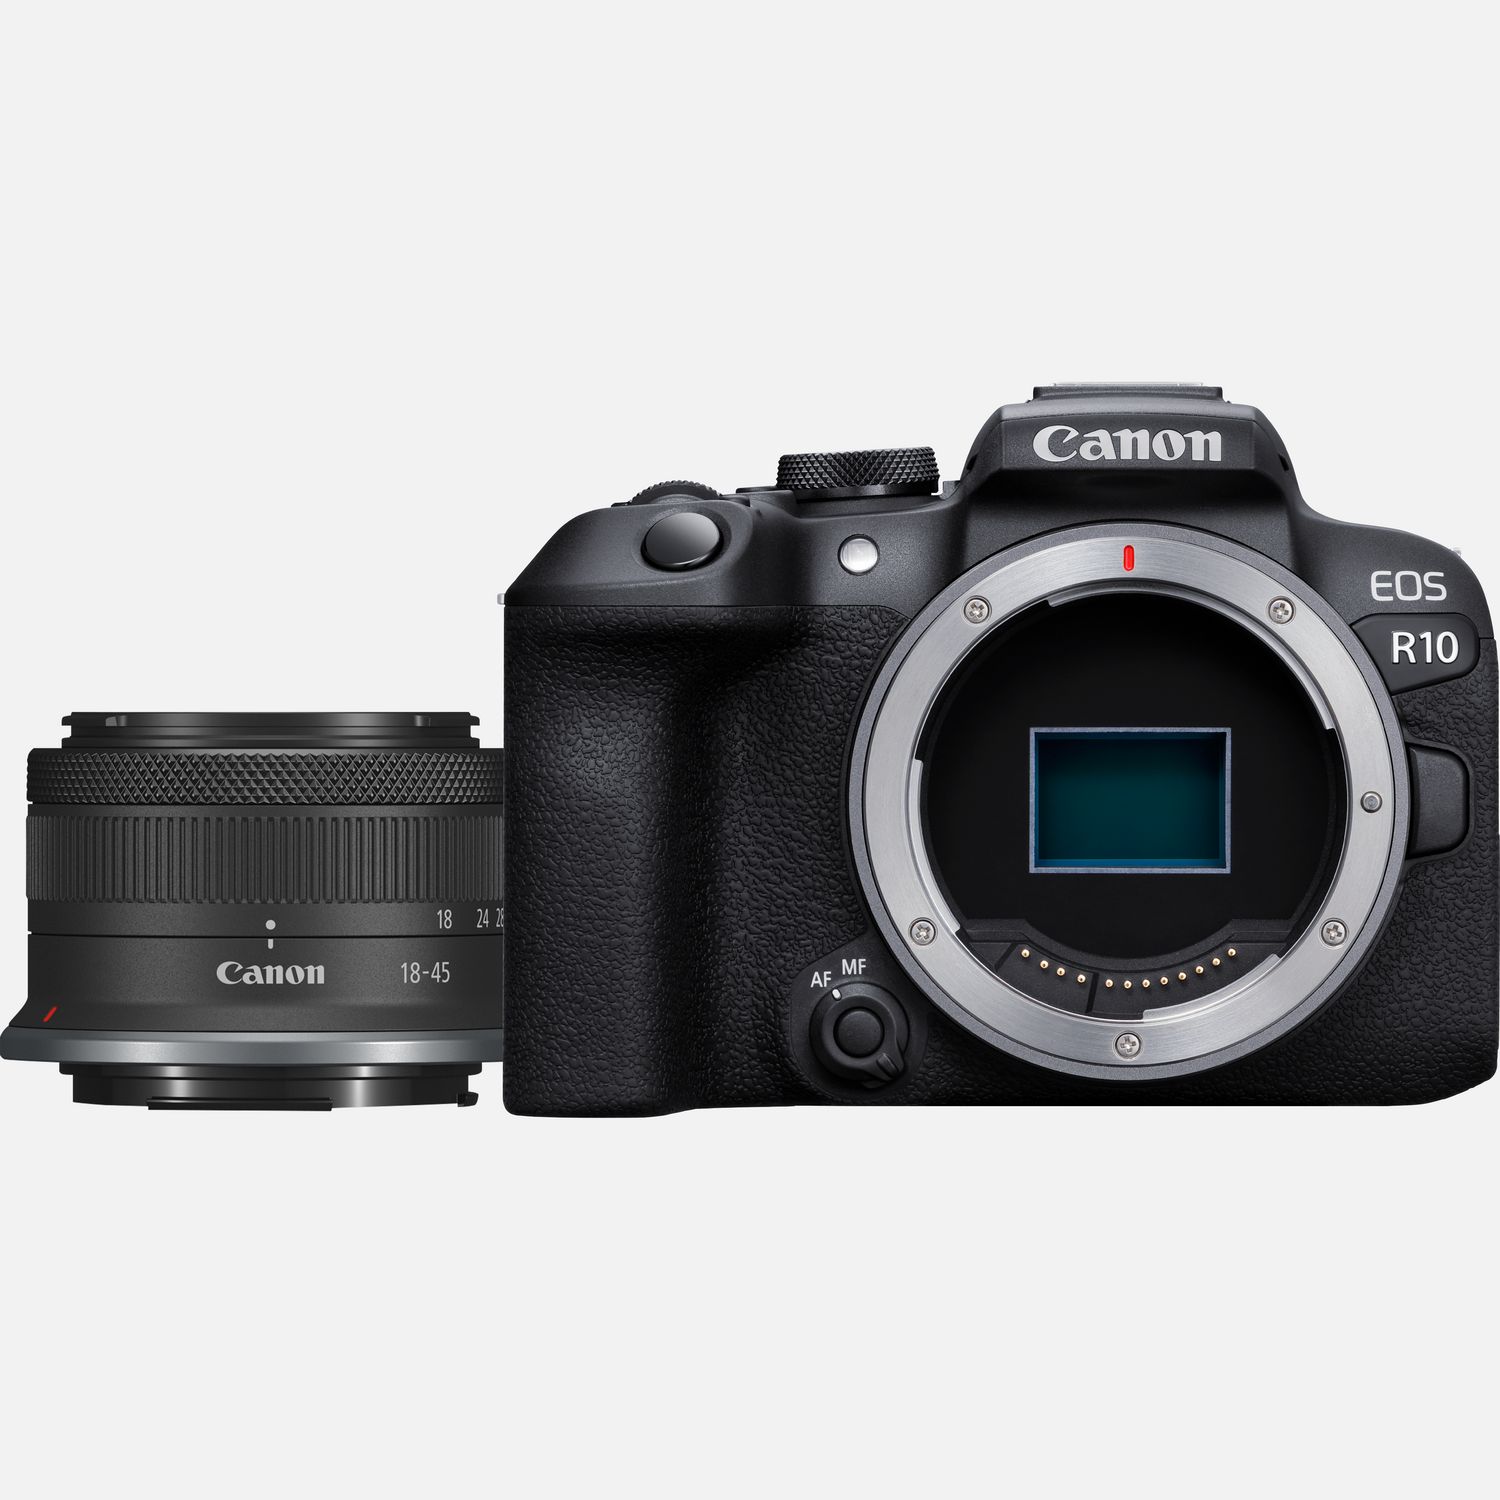 Mooie jurk scherp De databank Buy Canon EOS R10-systeemcamera en RF-S 18-45mm F4.5-6.3 IS STM-lens in  Wifi-camera's — Canon Belgie Store